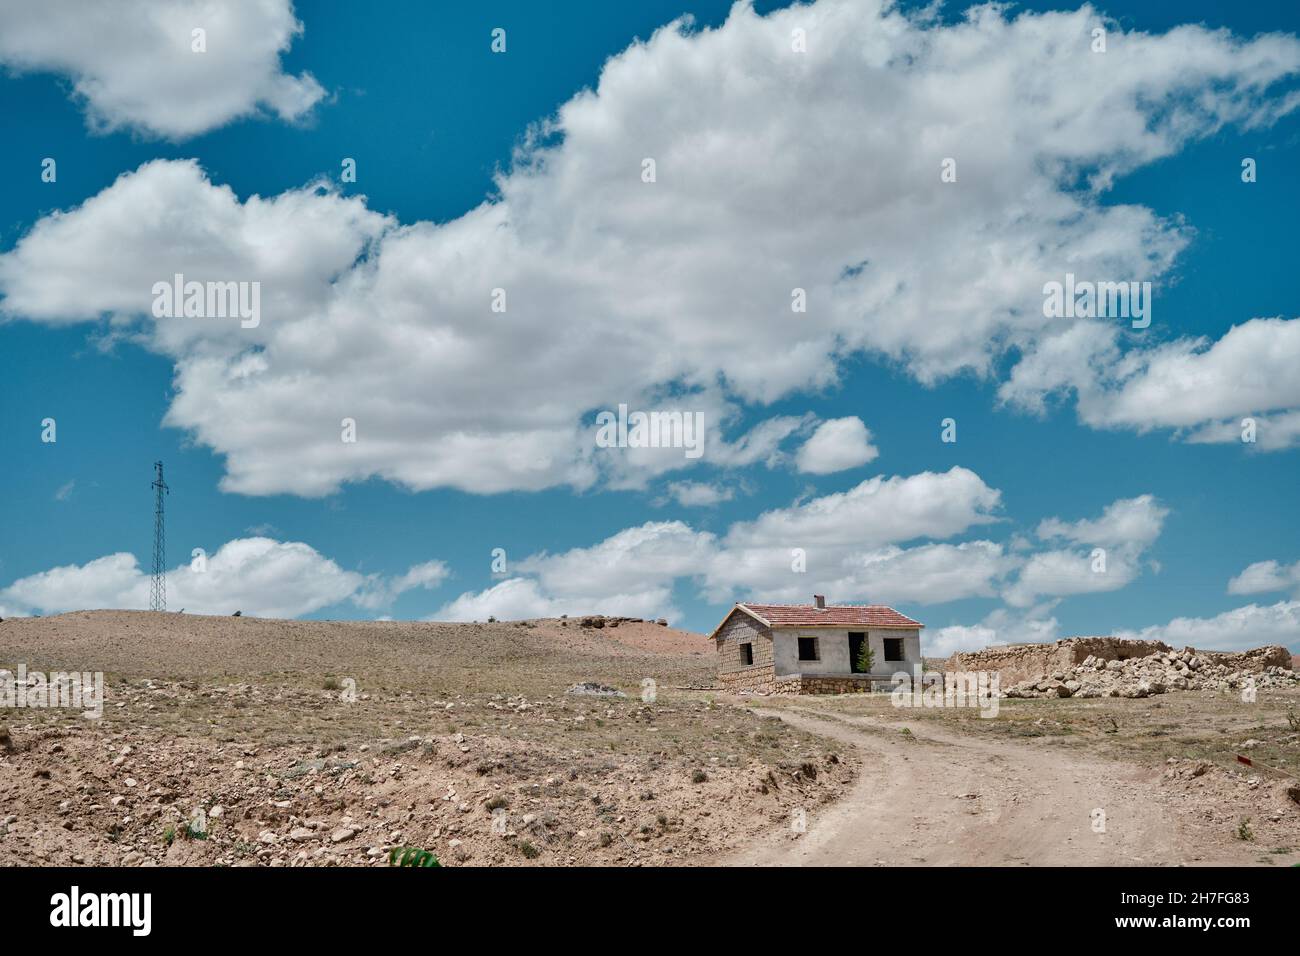 Tipica vita di villaggio nel lato centrale della Turchia. Strada sporca, casa singola in pietra d'epoca con tetto di mattoni rossi. Magnifico sfondo di paesaggio nuvoloso Foto Stock